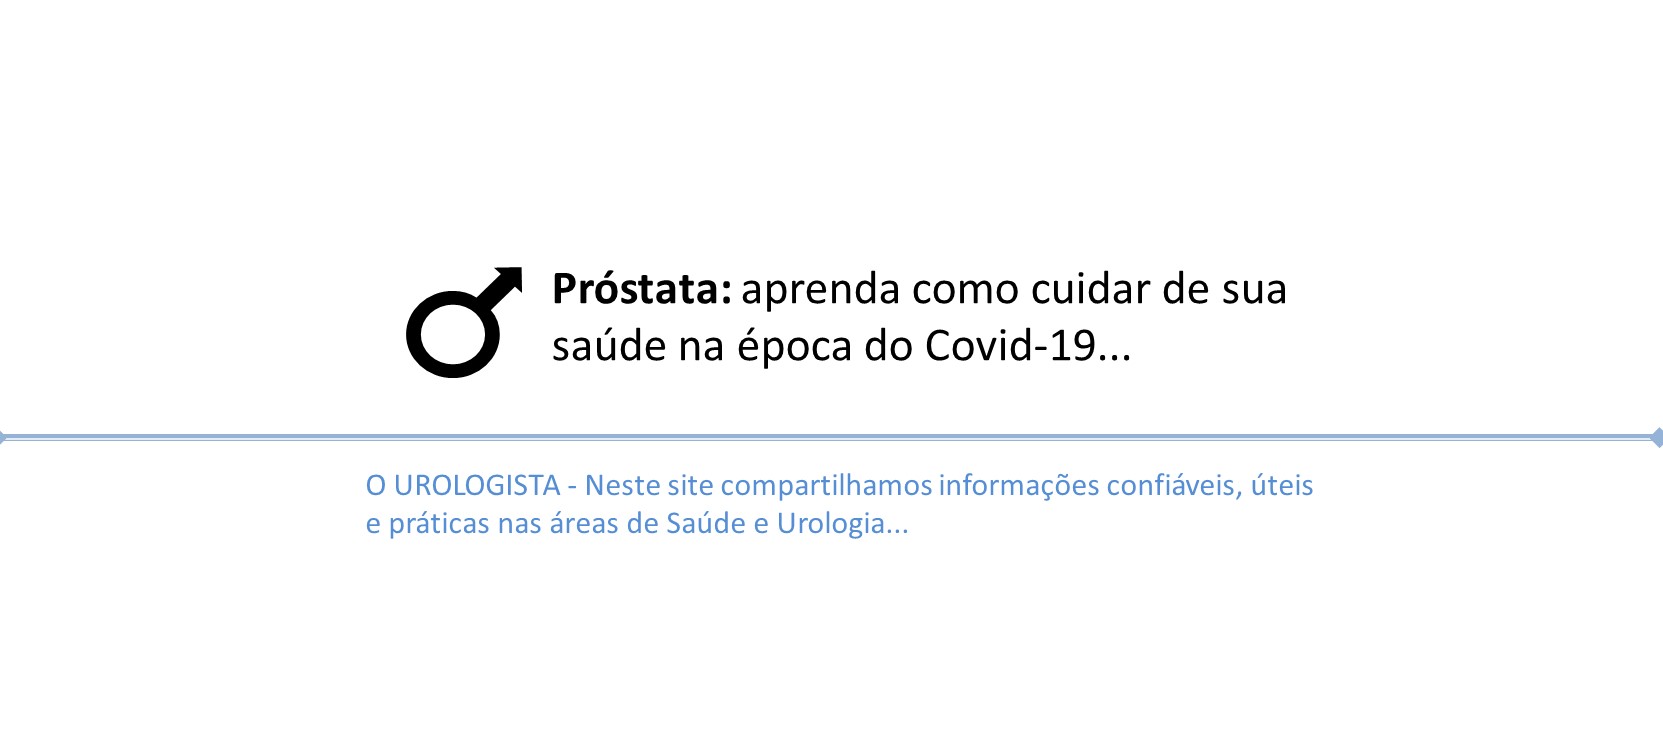 Cuidados com a Próstata em tempos de Covid-19